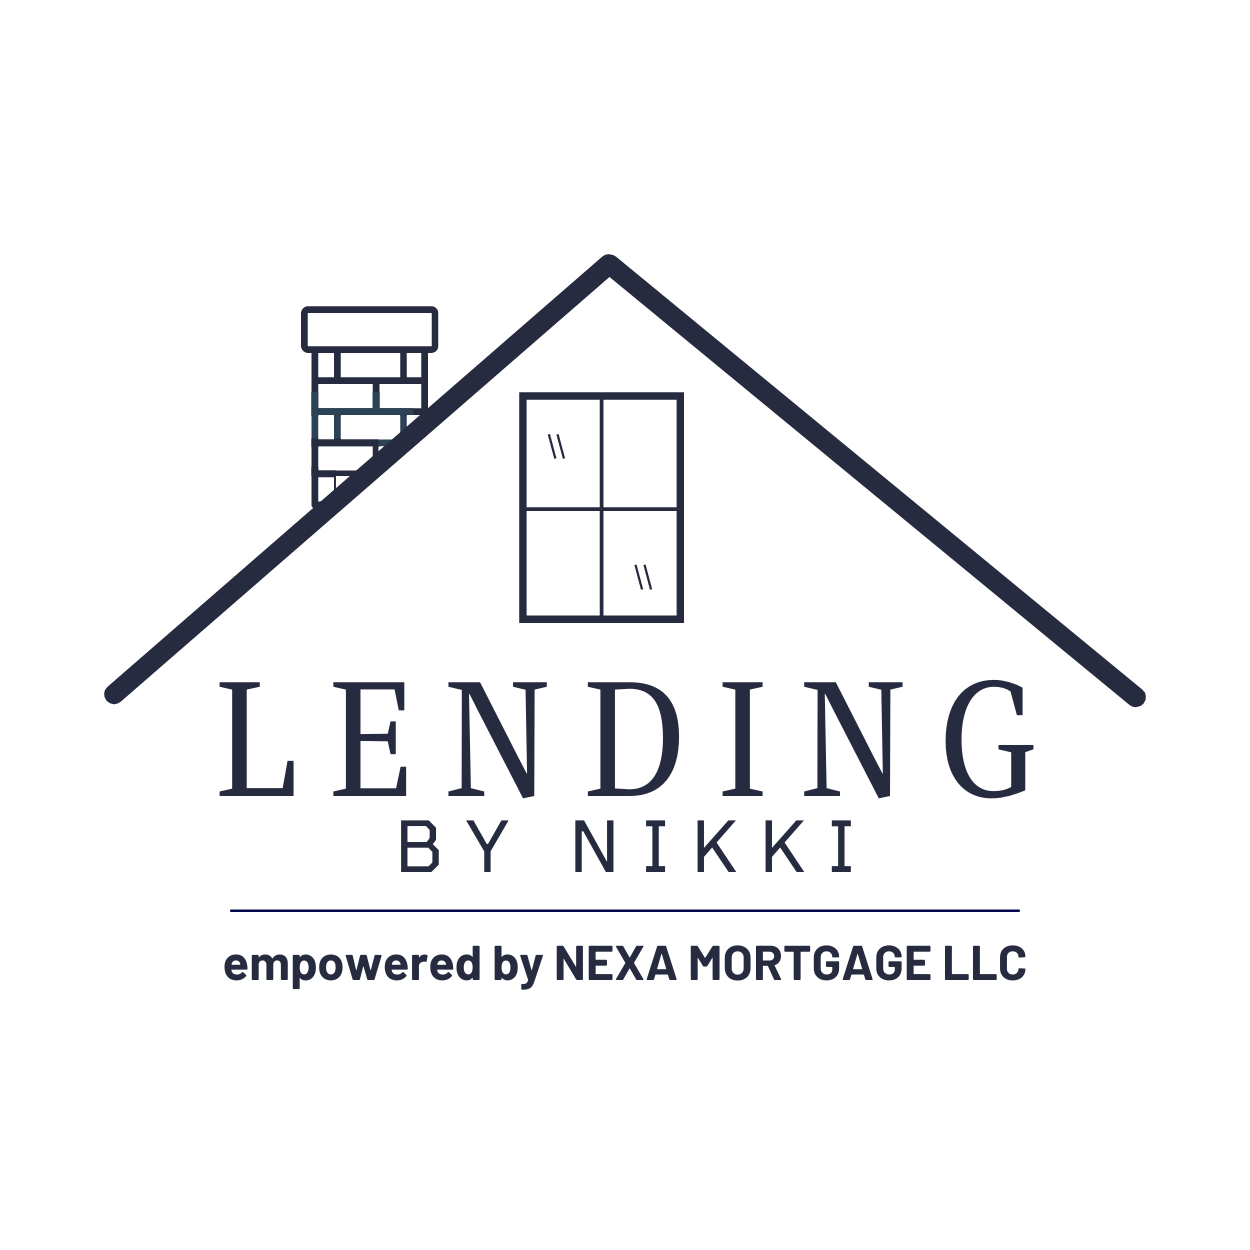 Lending By Nikki